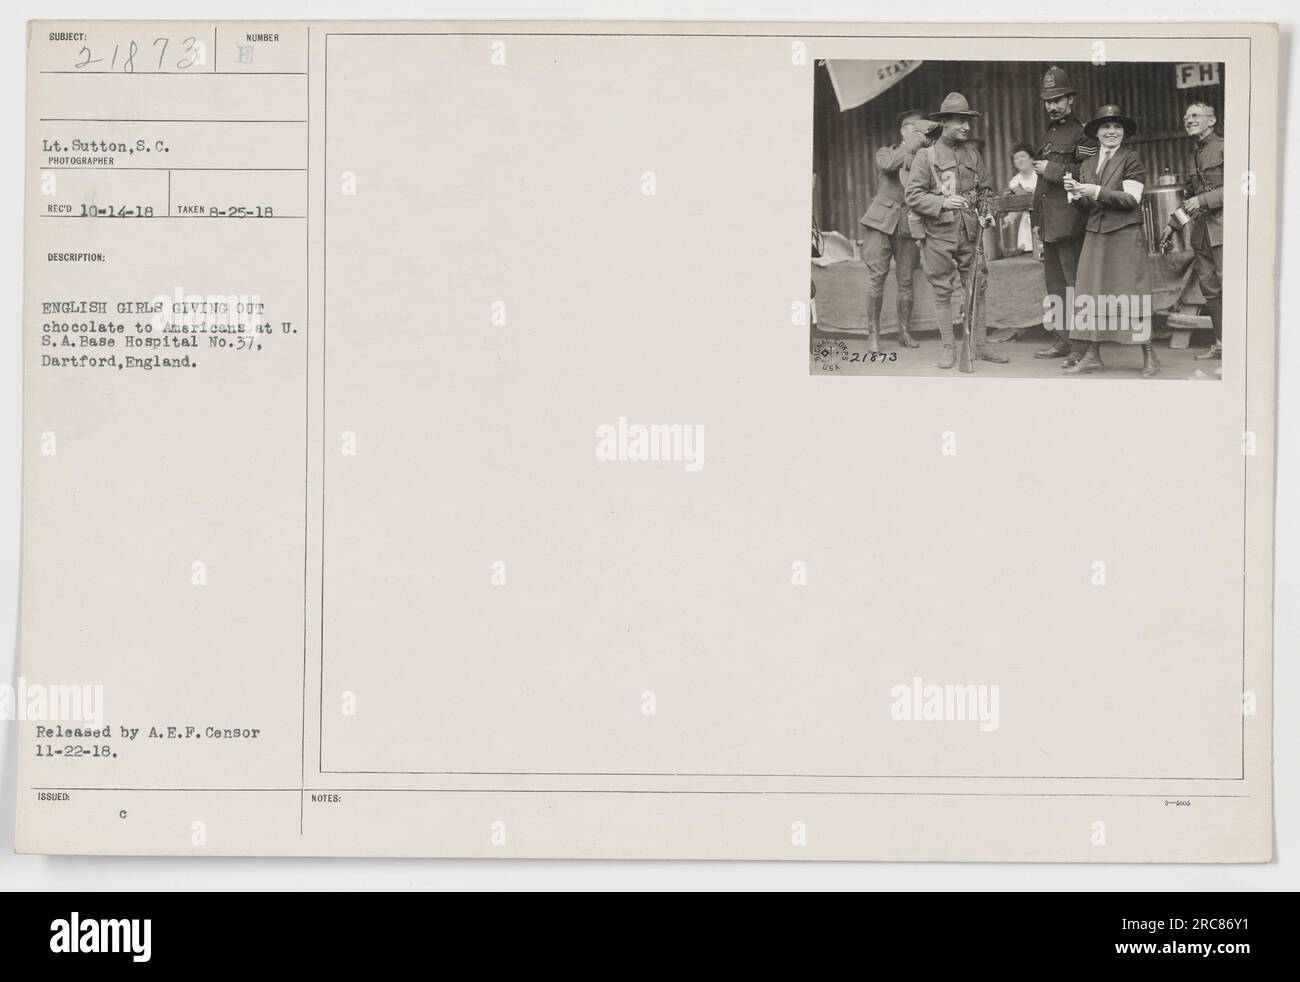 Soldati americani che ricevono cioccolato da ragazze inglesi negli Stati Uniti Base Hospital No. 37 a Dartford, Inghilterra il 25 agosto 1918. Foto del tenente Sutton. Rilasciato da A.E.F. Censor il 22 novembre 1918. Foto Stock